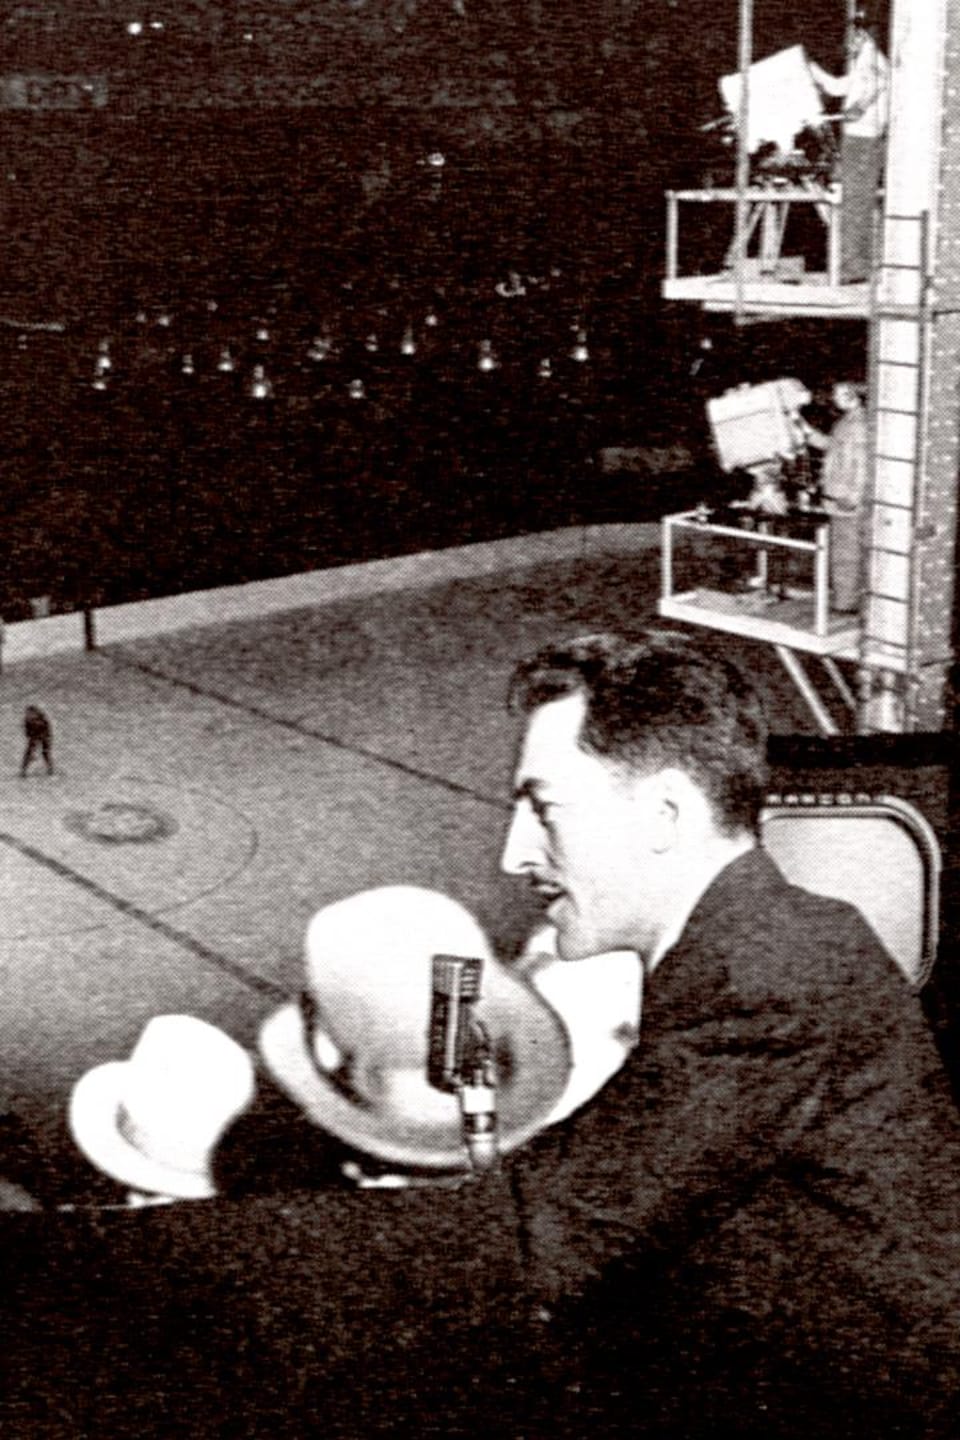 Au Forum de Montréal, le commentateur sportif René Lecavalier, le réalisateur Louis Bédard et le commentateur sportif Michel Normandin font la description d'un match de hockey qu'on peut voir se dérouler à l'arrière-plan.